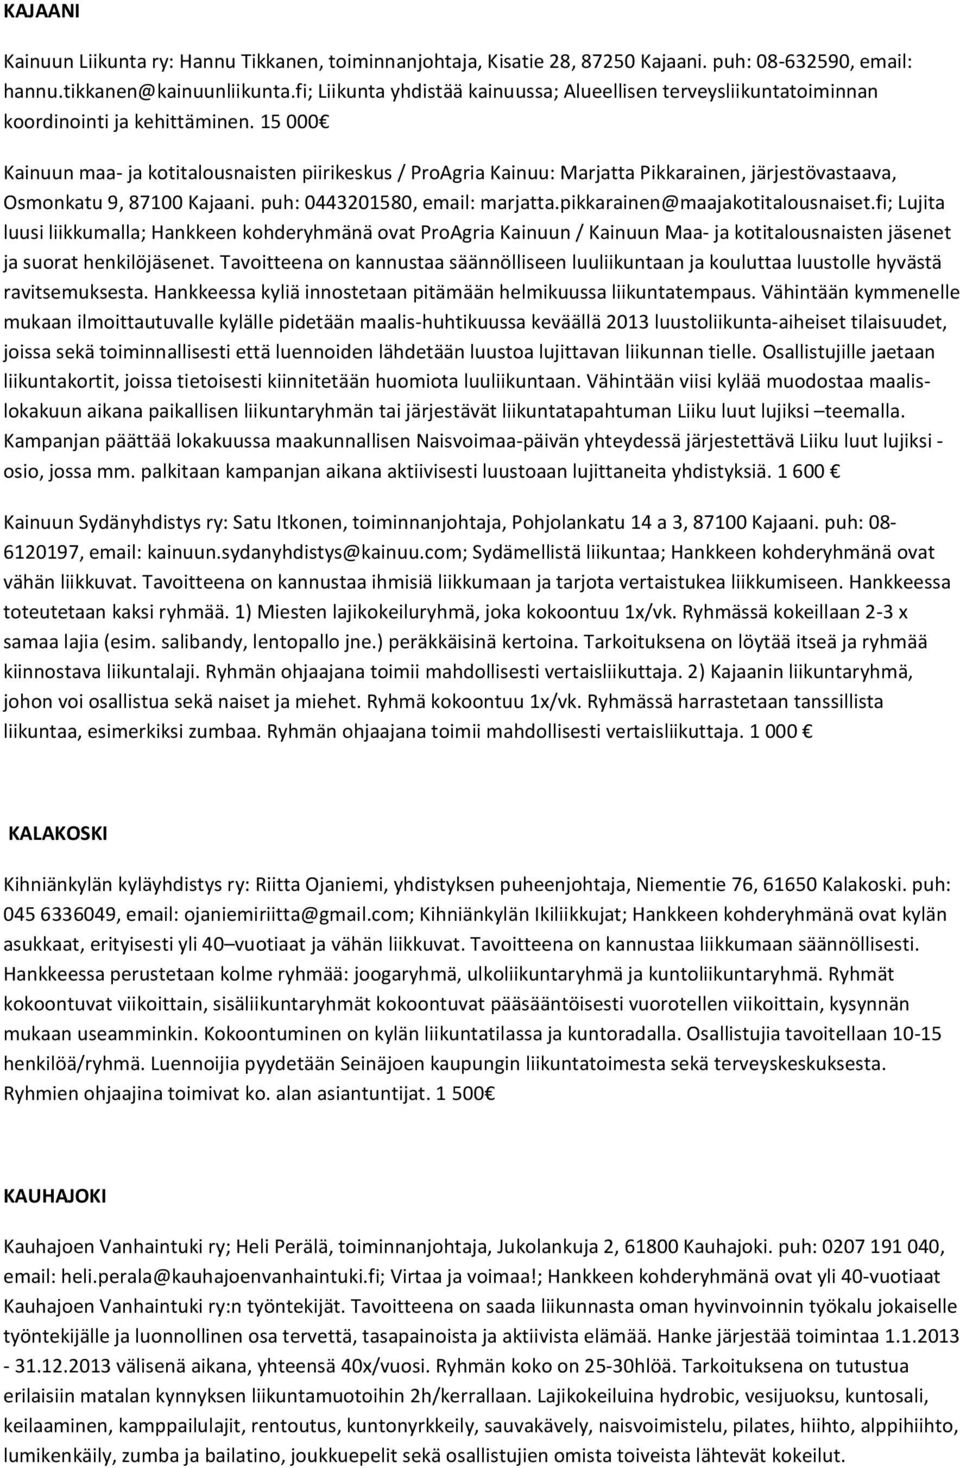 15 000 Kainuun maa- ja kotitalousnaisten piirikeskus / ProAgria Kainuu: Marjatta Pikkarainen, järjestövastaava, Osmonkatu 9, 87100 Kajaani. puh: 0443201580, email: marjatta.